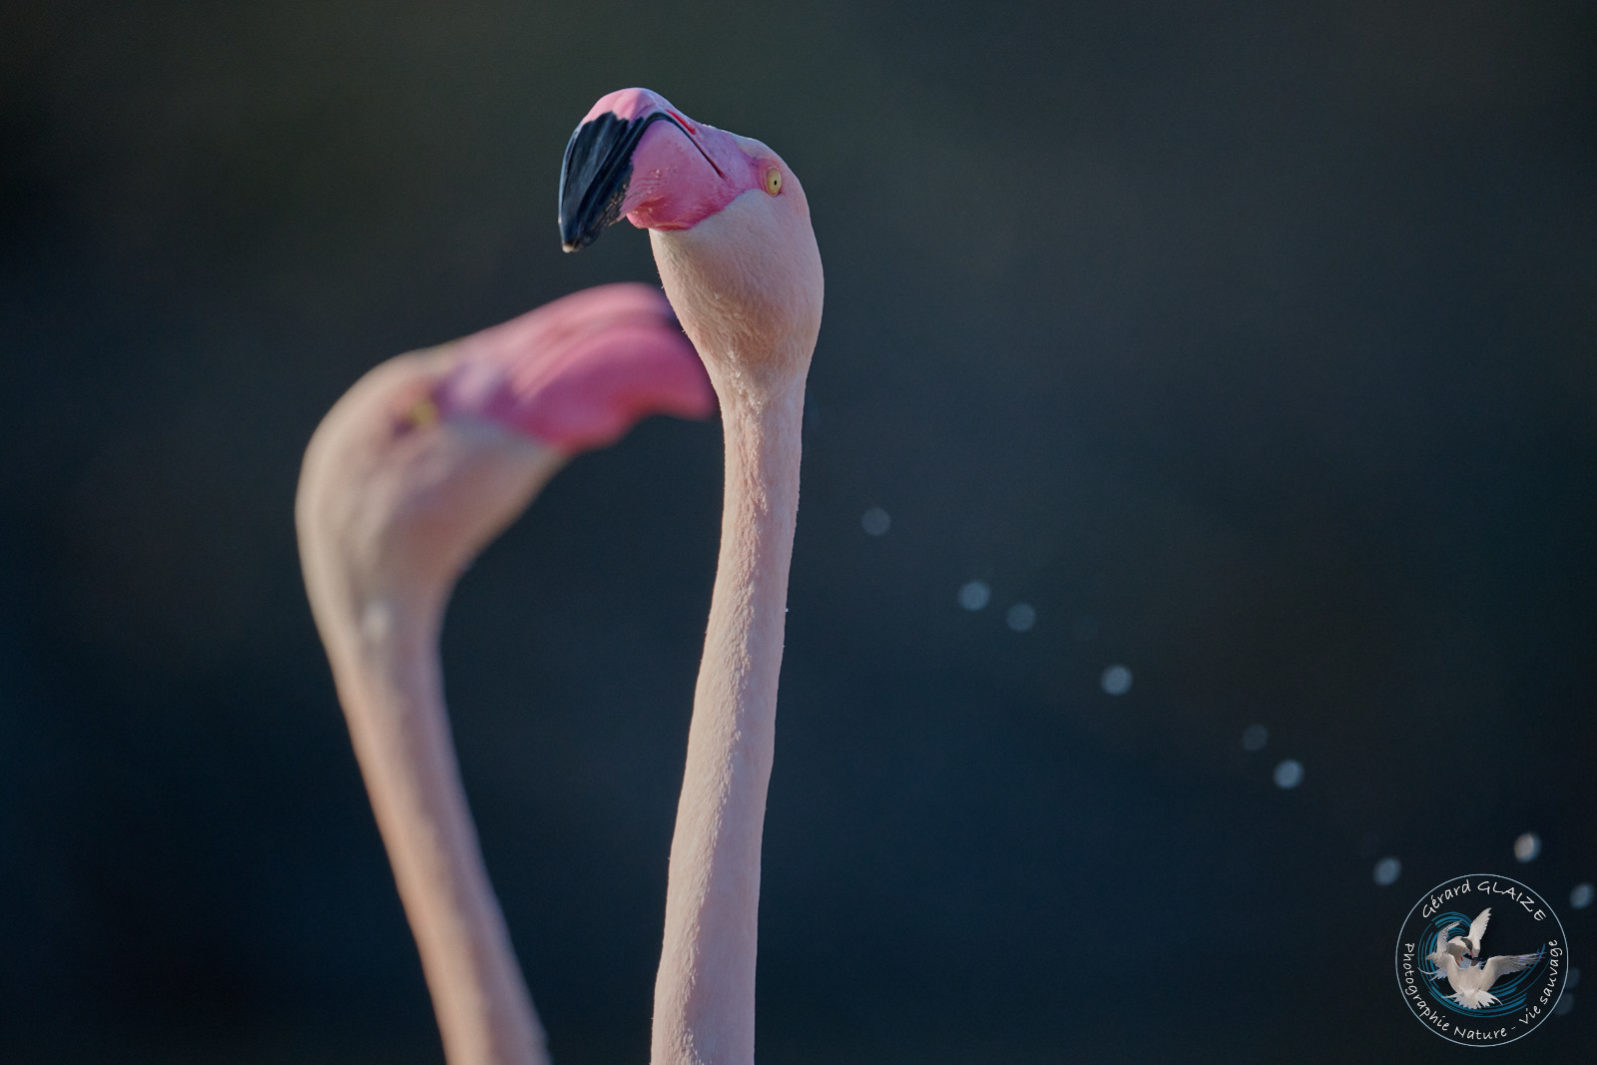 Flamant rose - Greater flamingo